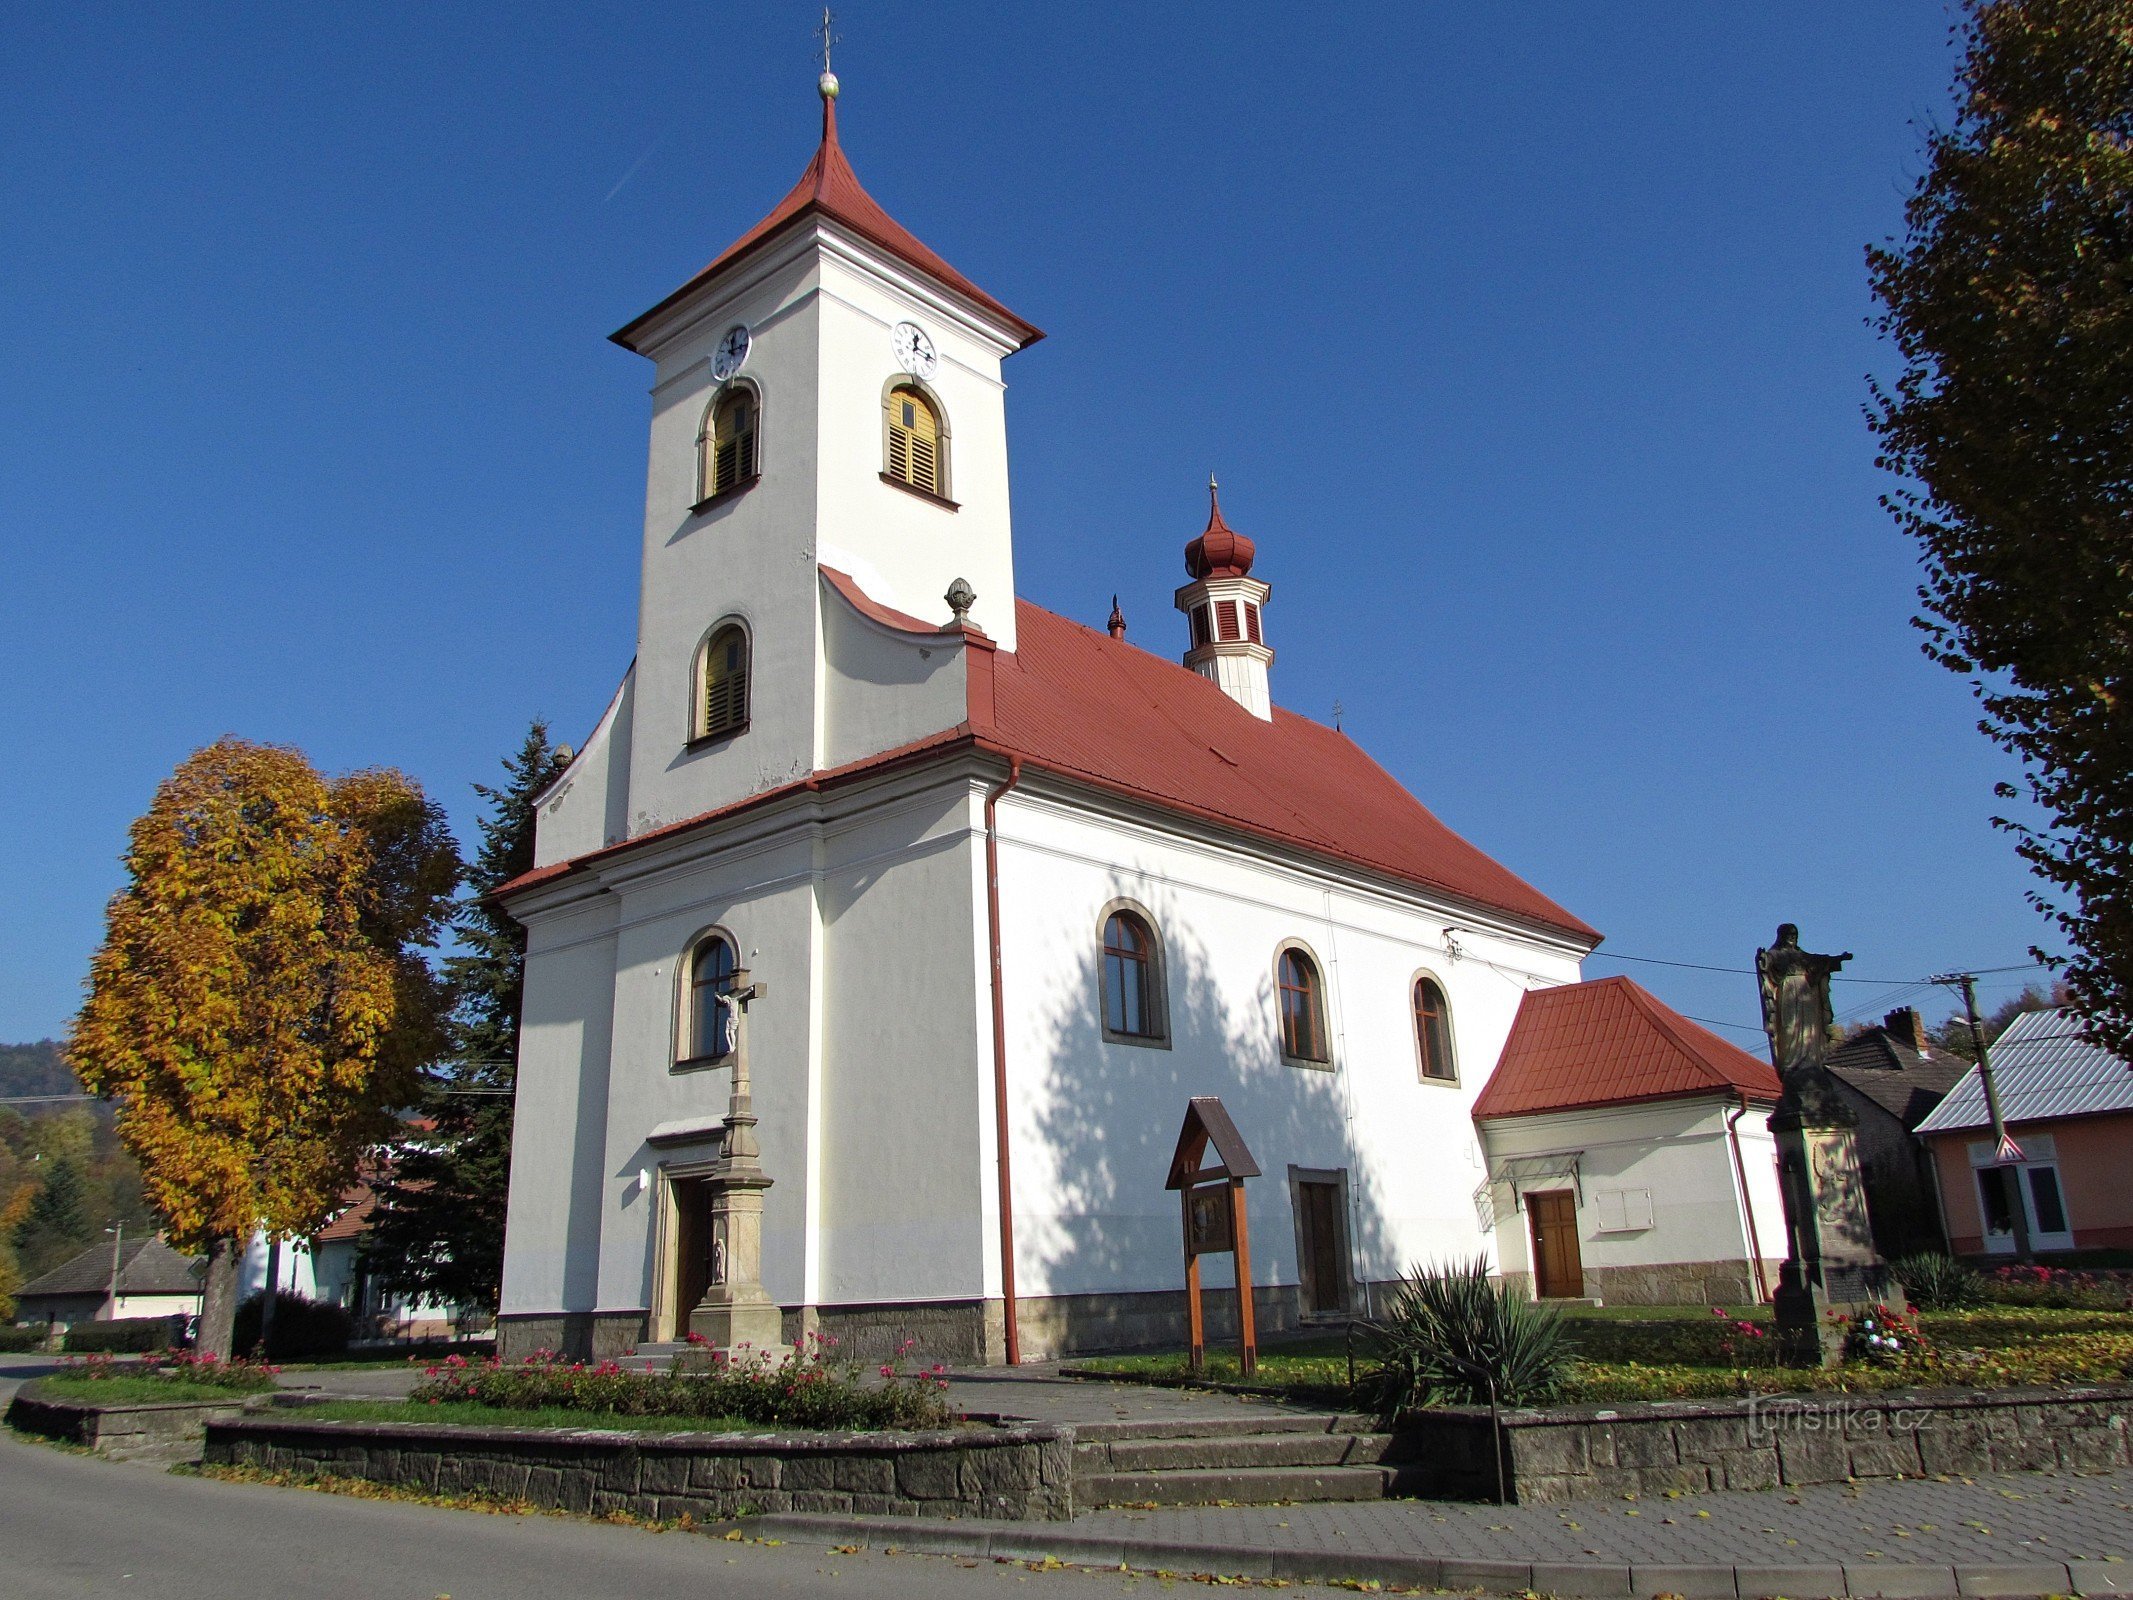 St. Katarina kyrka